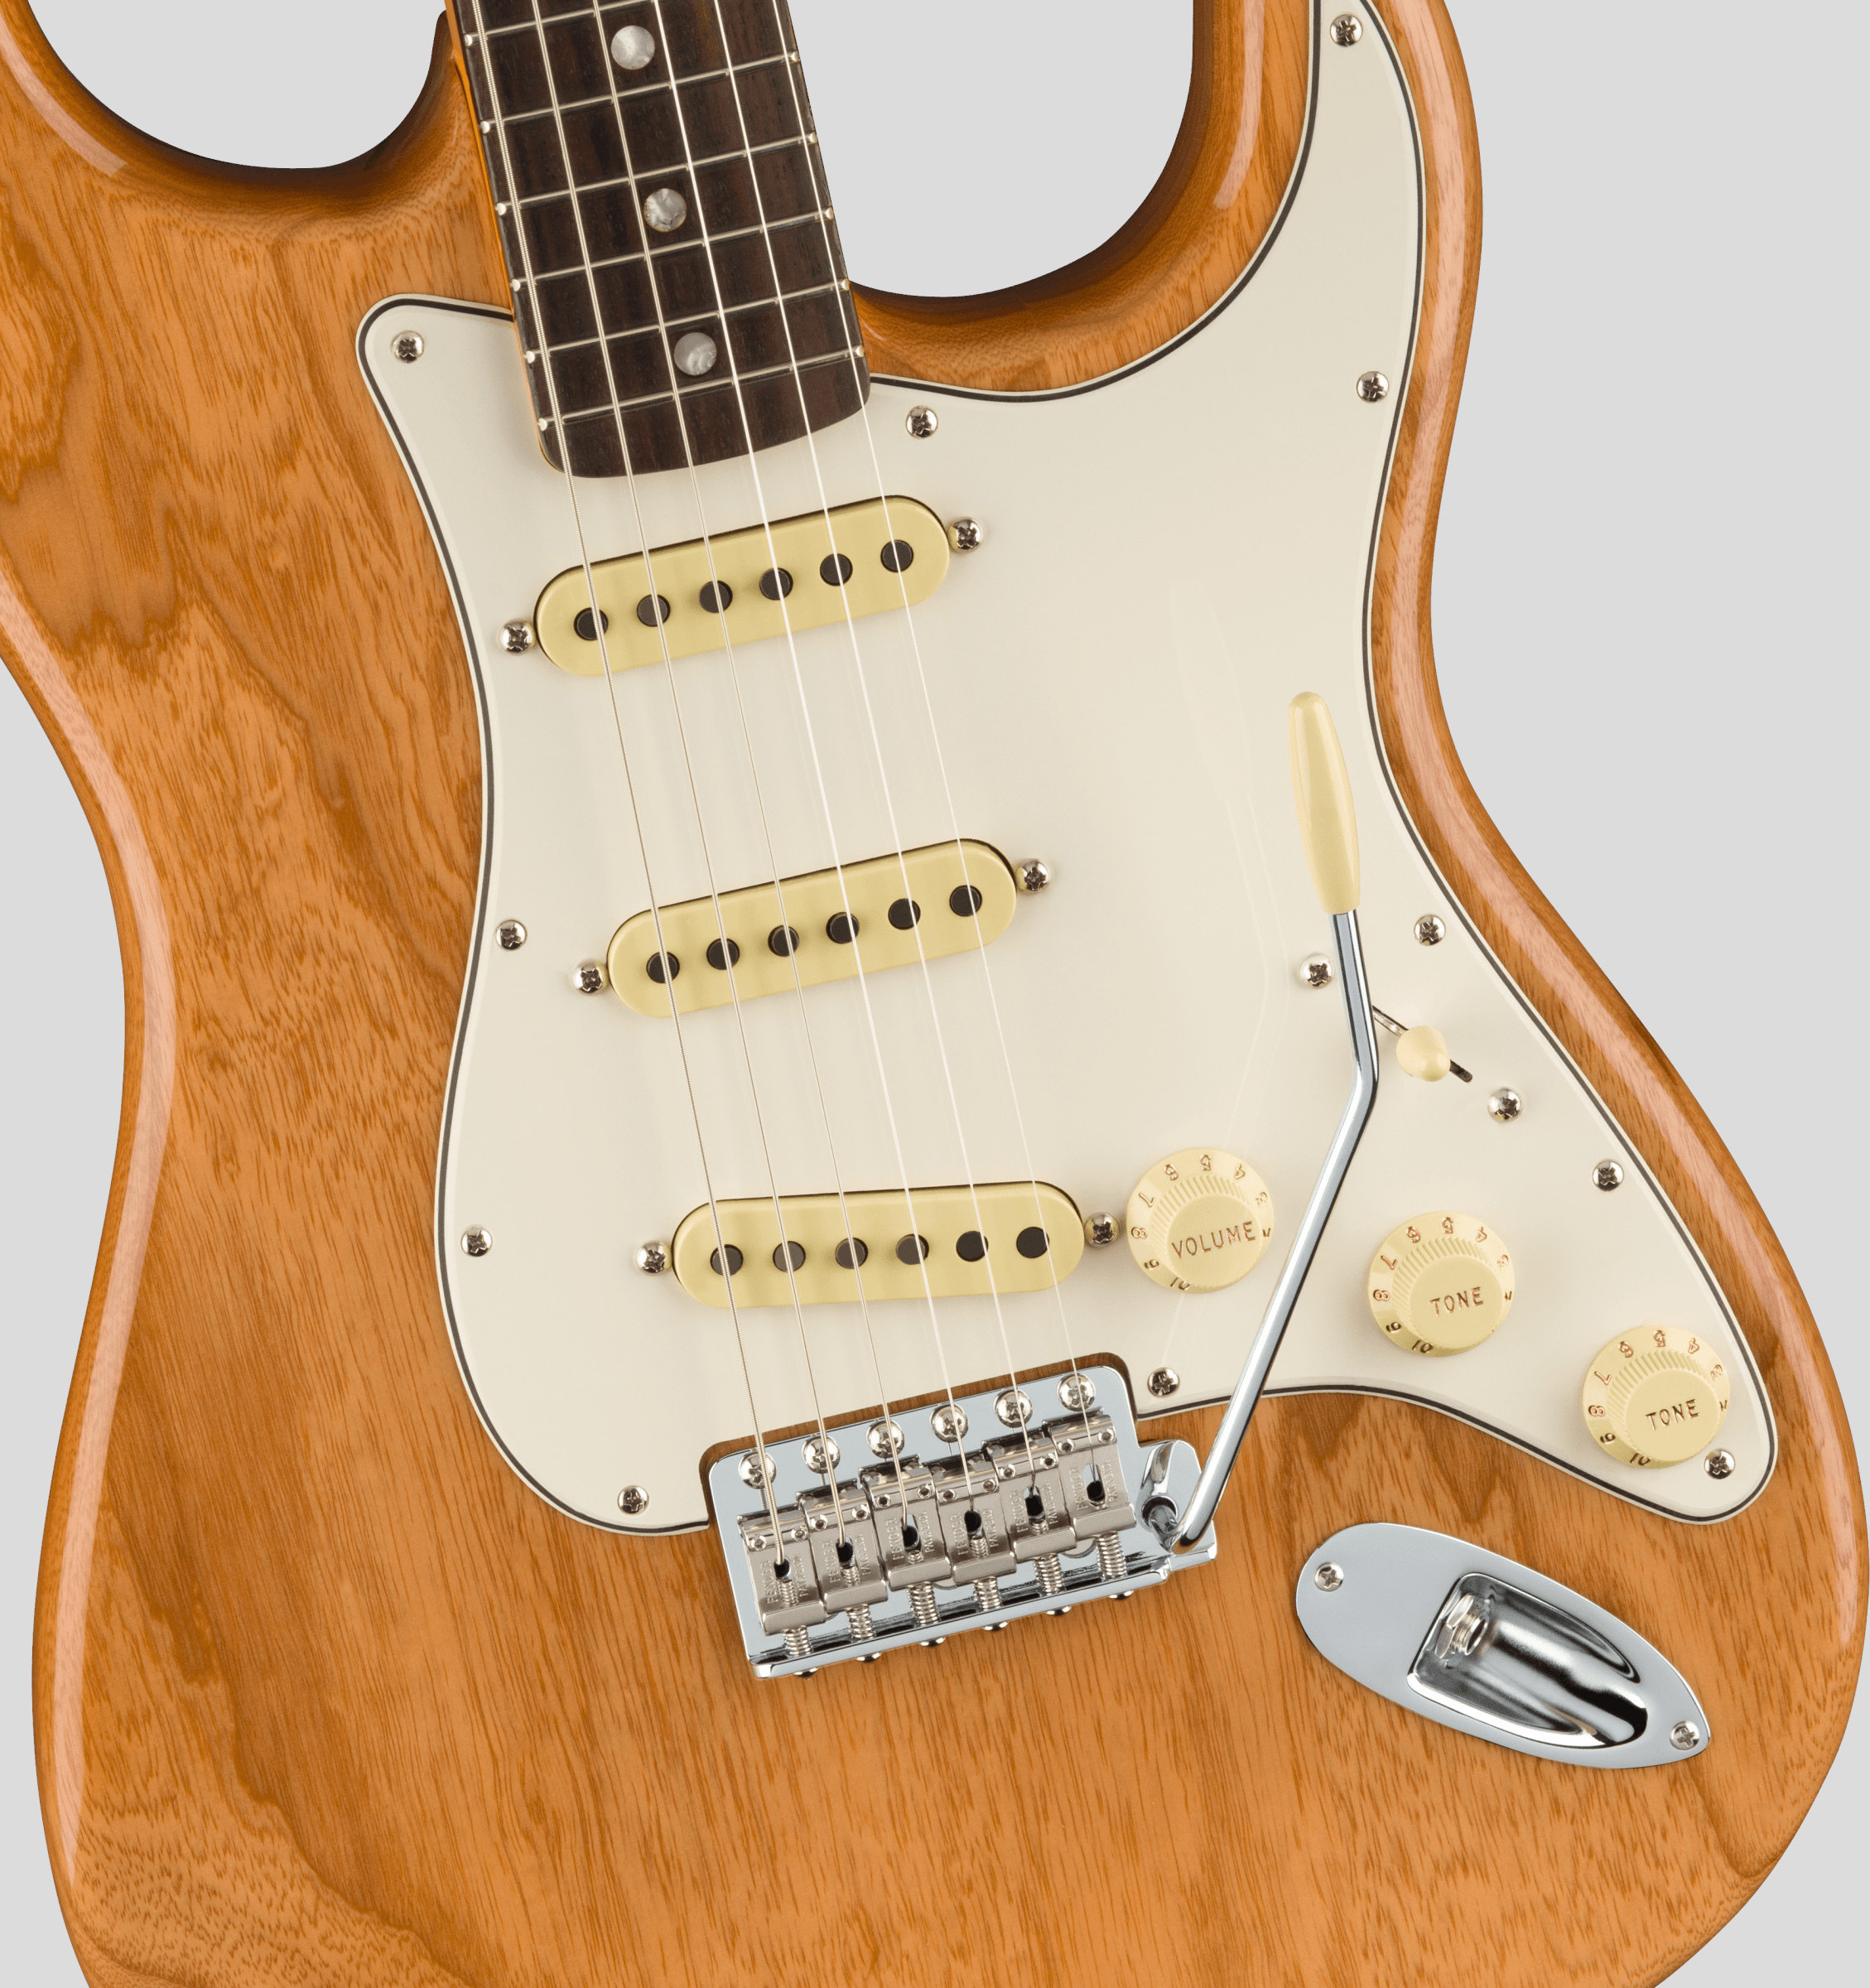 Fender American Vintage II 1973 Stratocaster Aged Natural 4